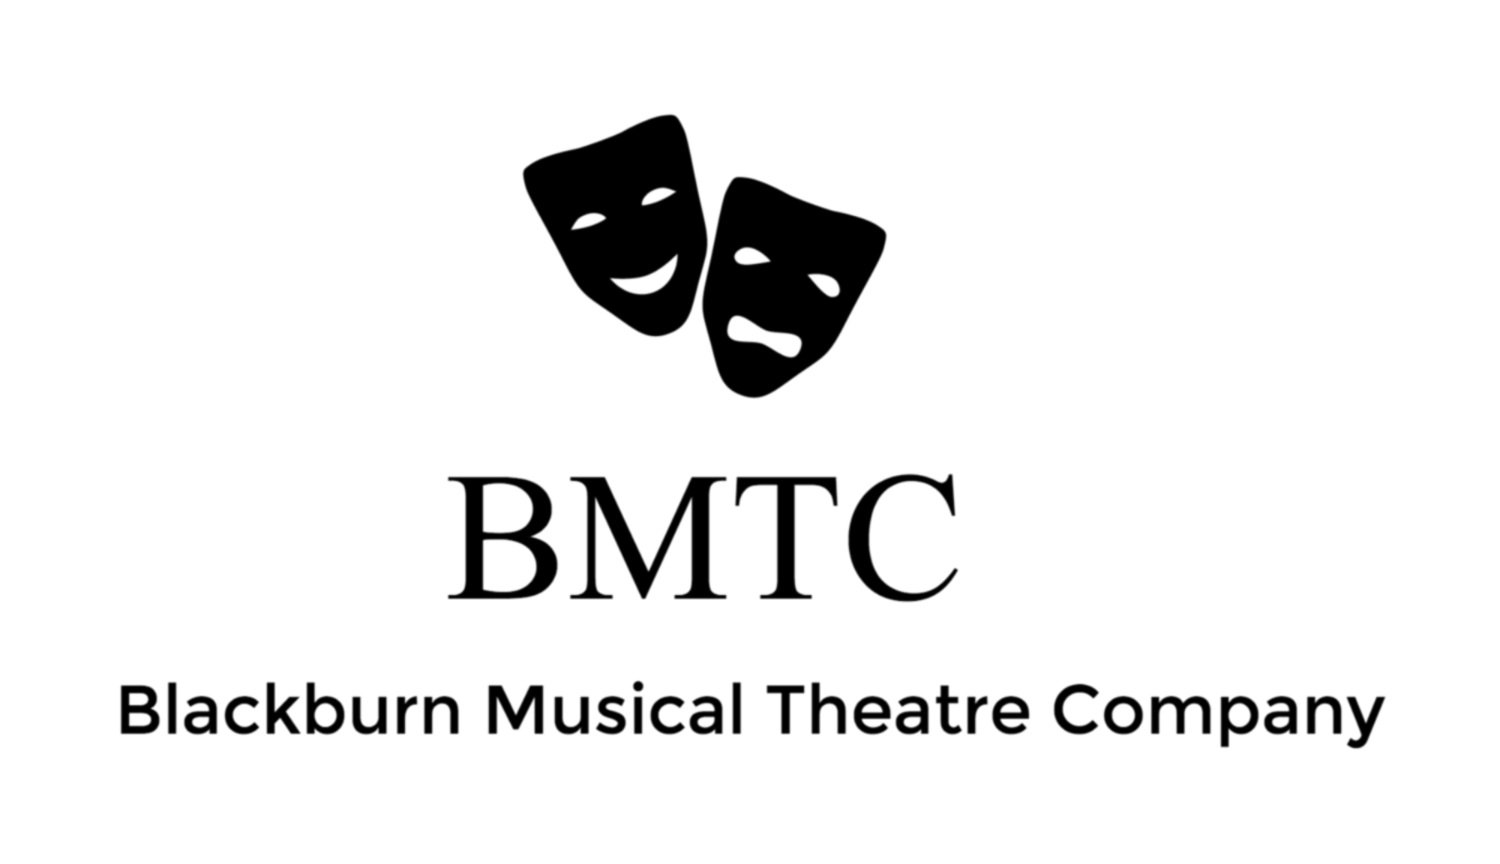 Blackburn Musical Theatre Company